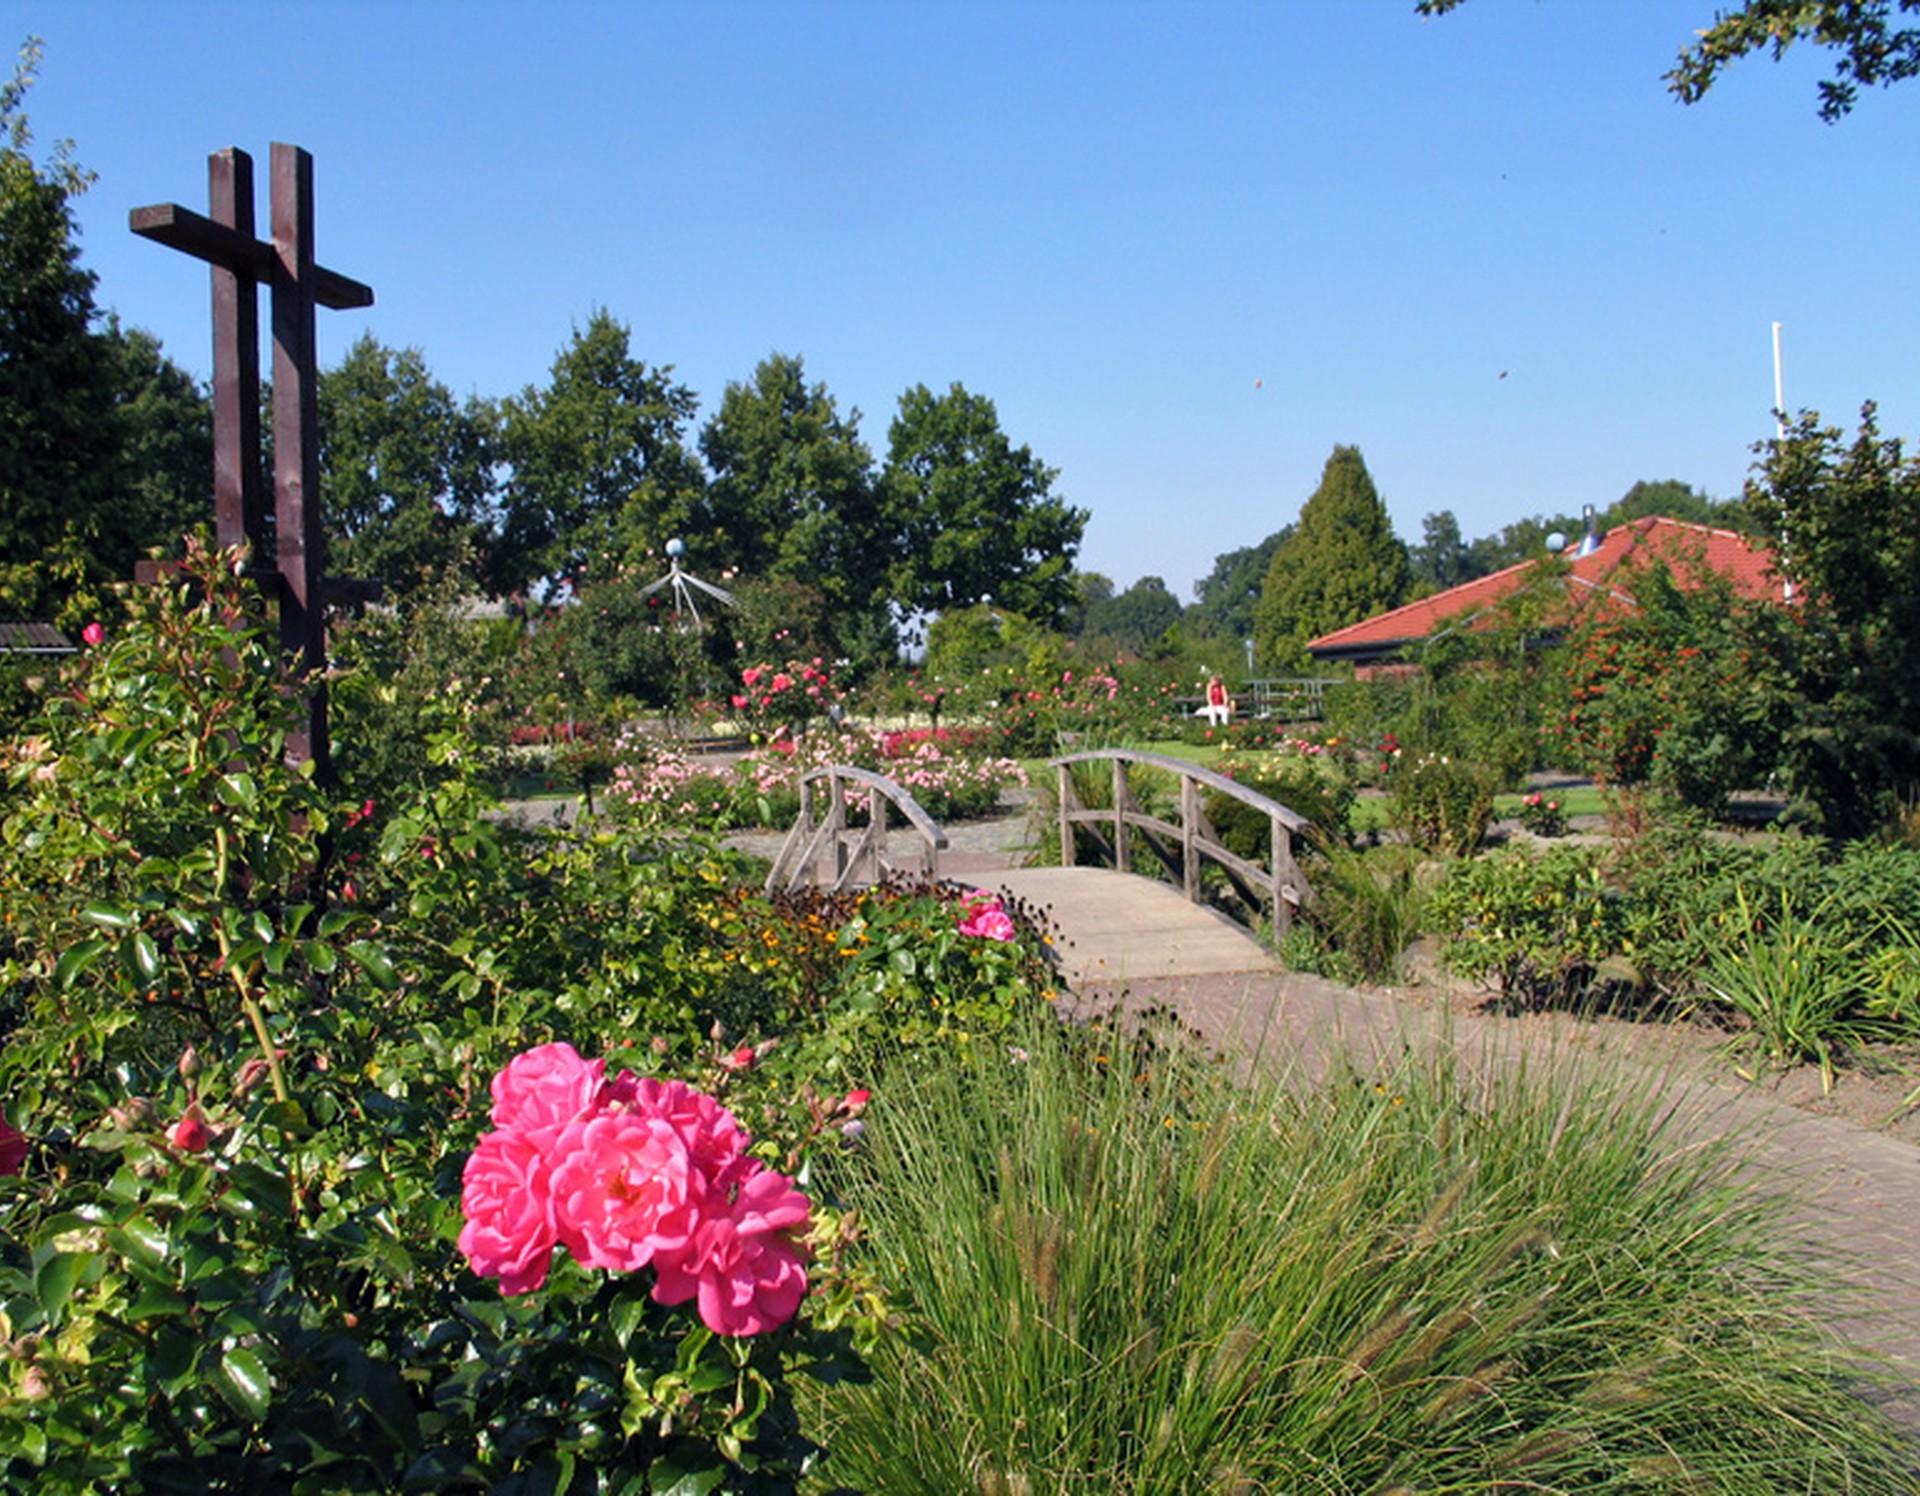 Einige der Rosen im Rosengarten Seppenrade sowie weitere Gewächse. Eine Brücke führt über einen Teich. Im Hintergrund rechts steht das Heimathaus.